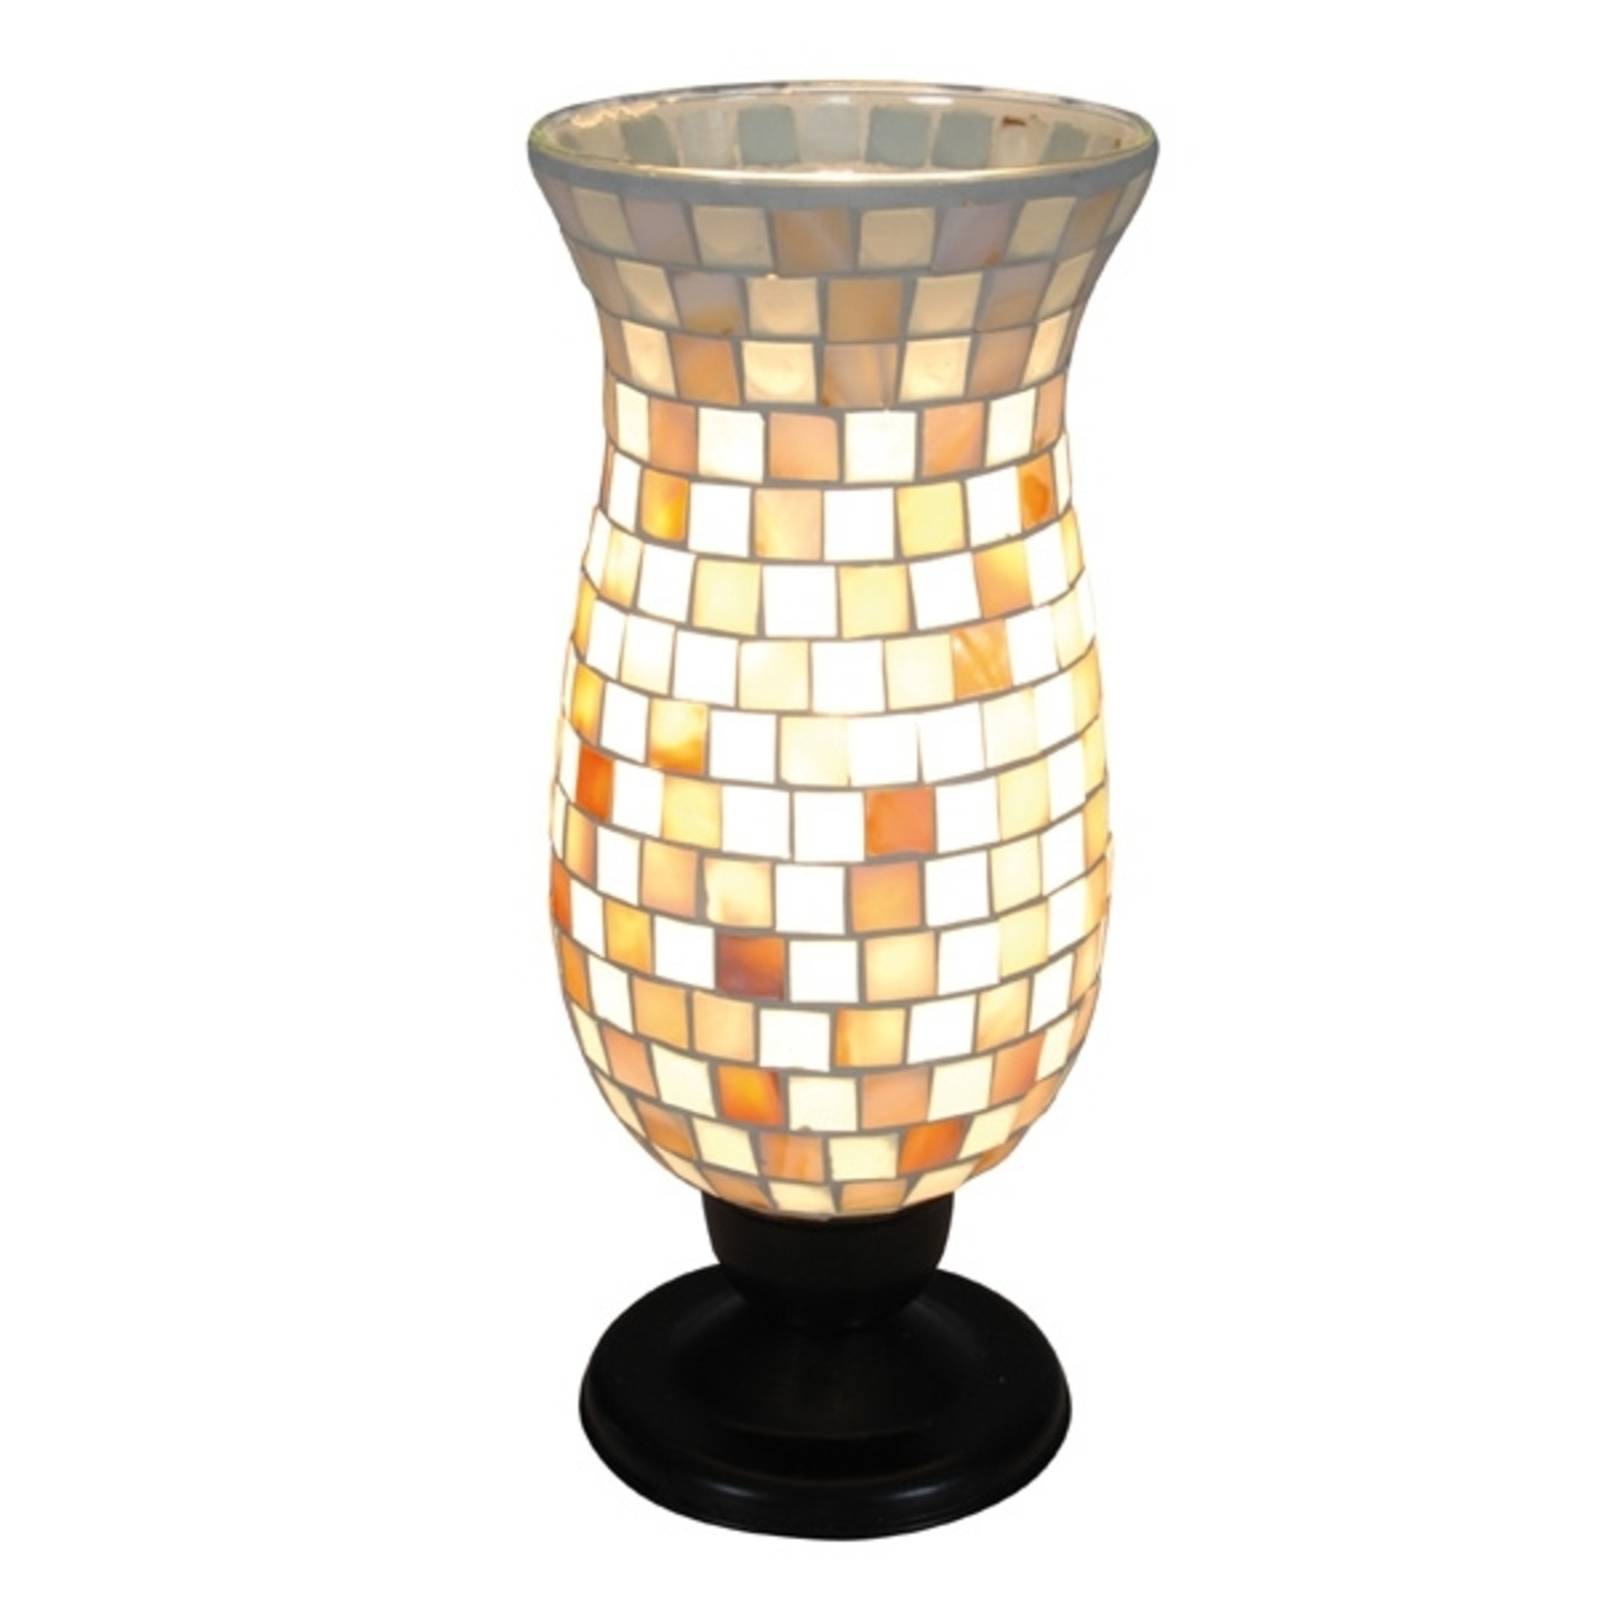 Yara table lamp with a mosaic lampshade